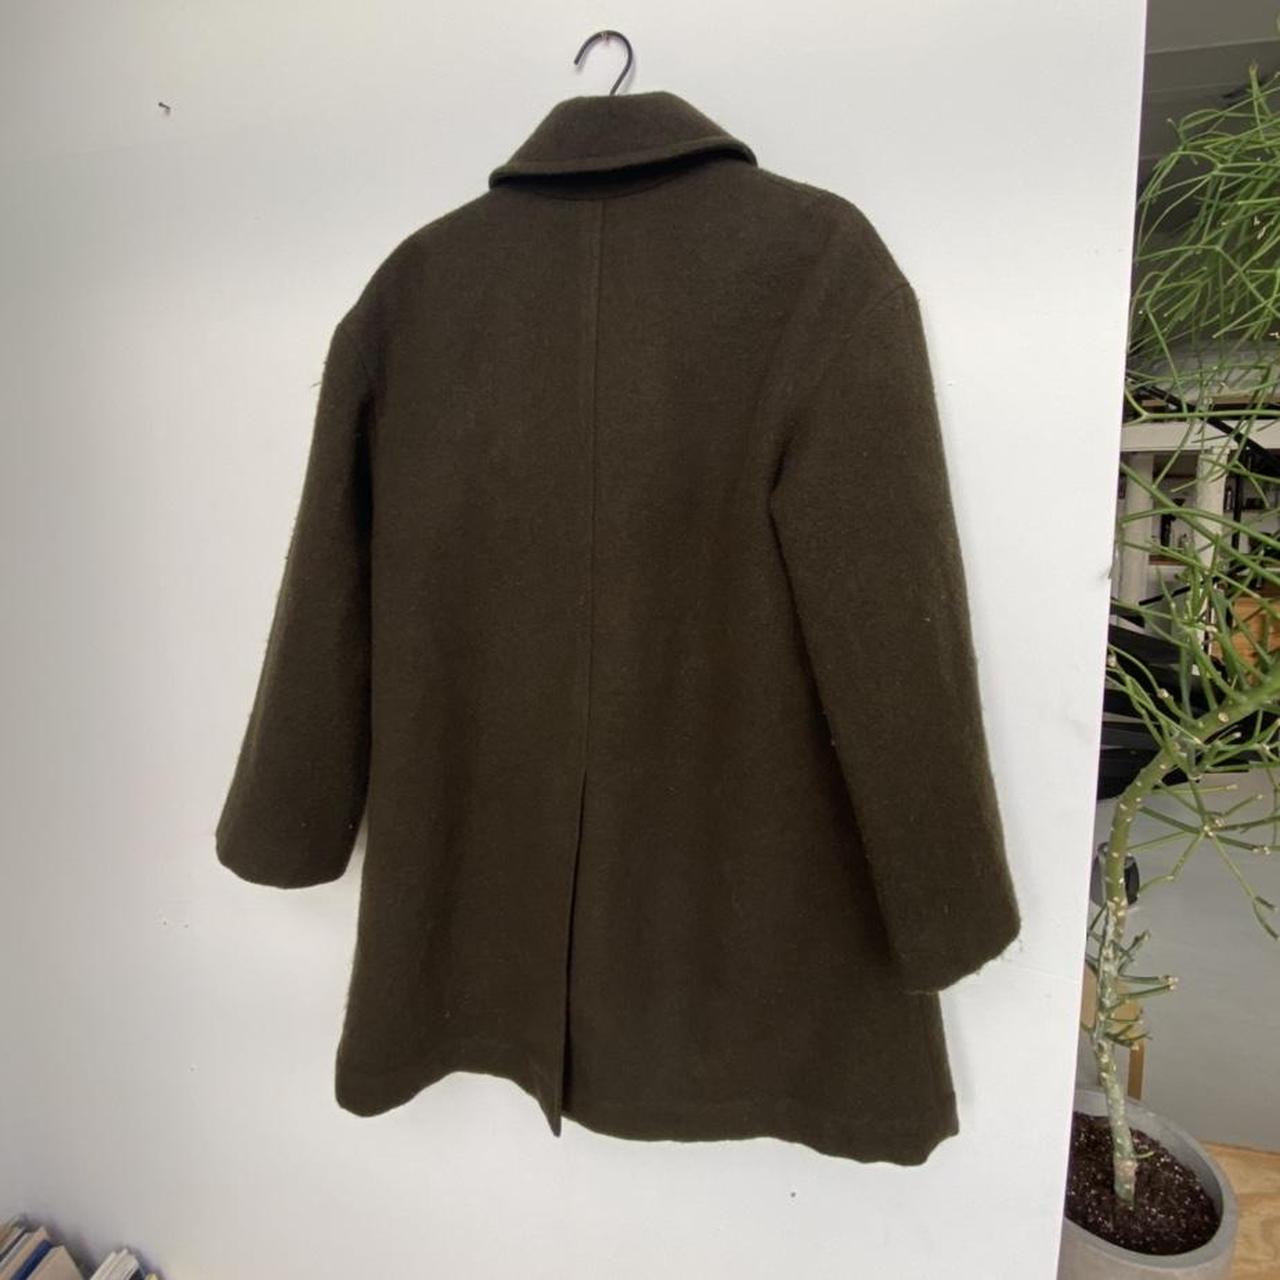 Product Image 2 - Wool TOAST pea coat. Nice